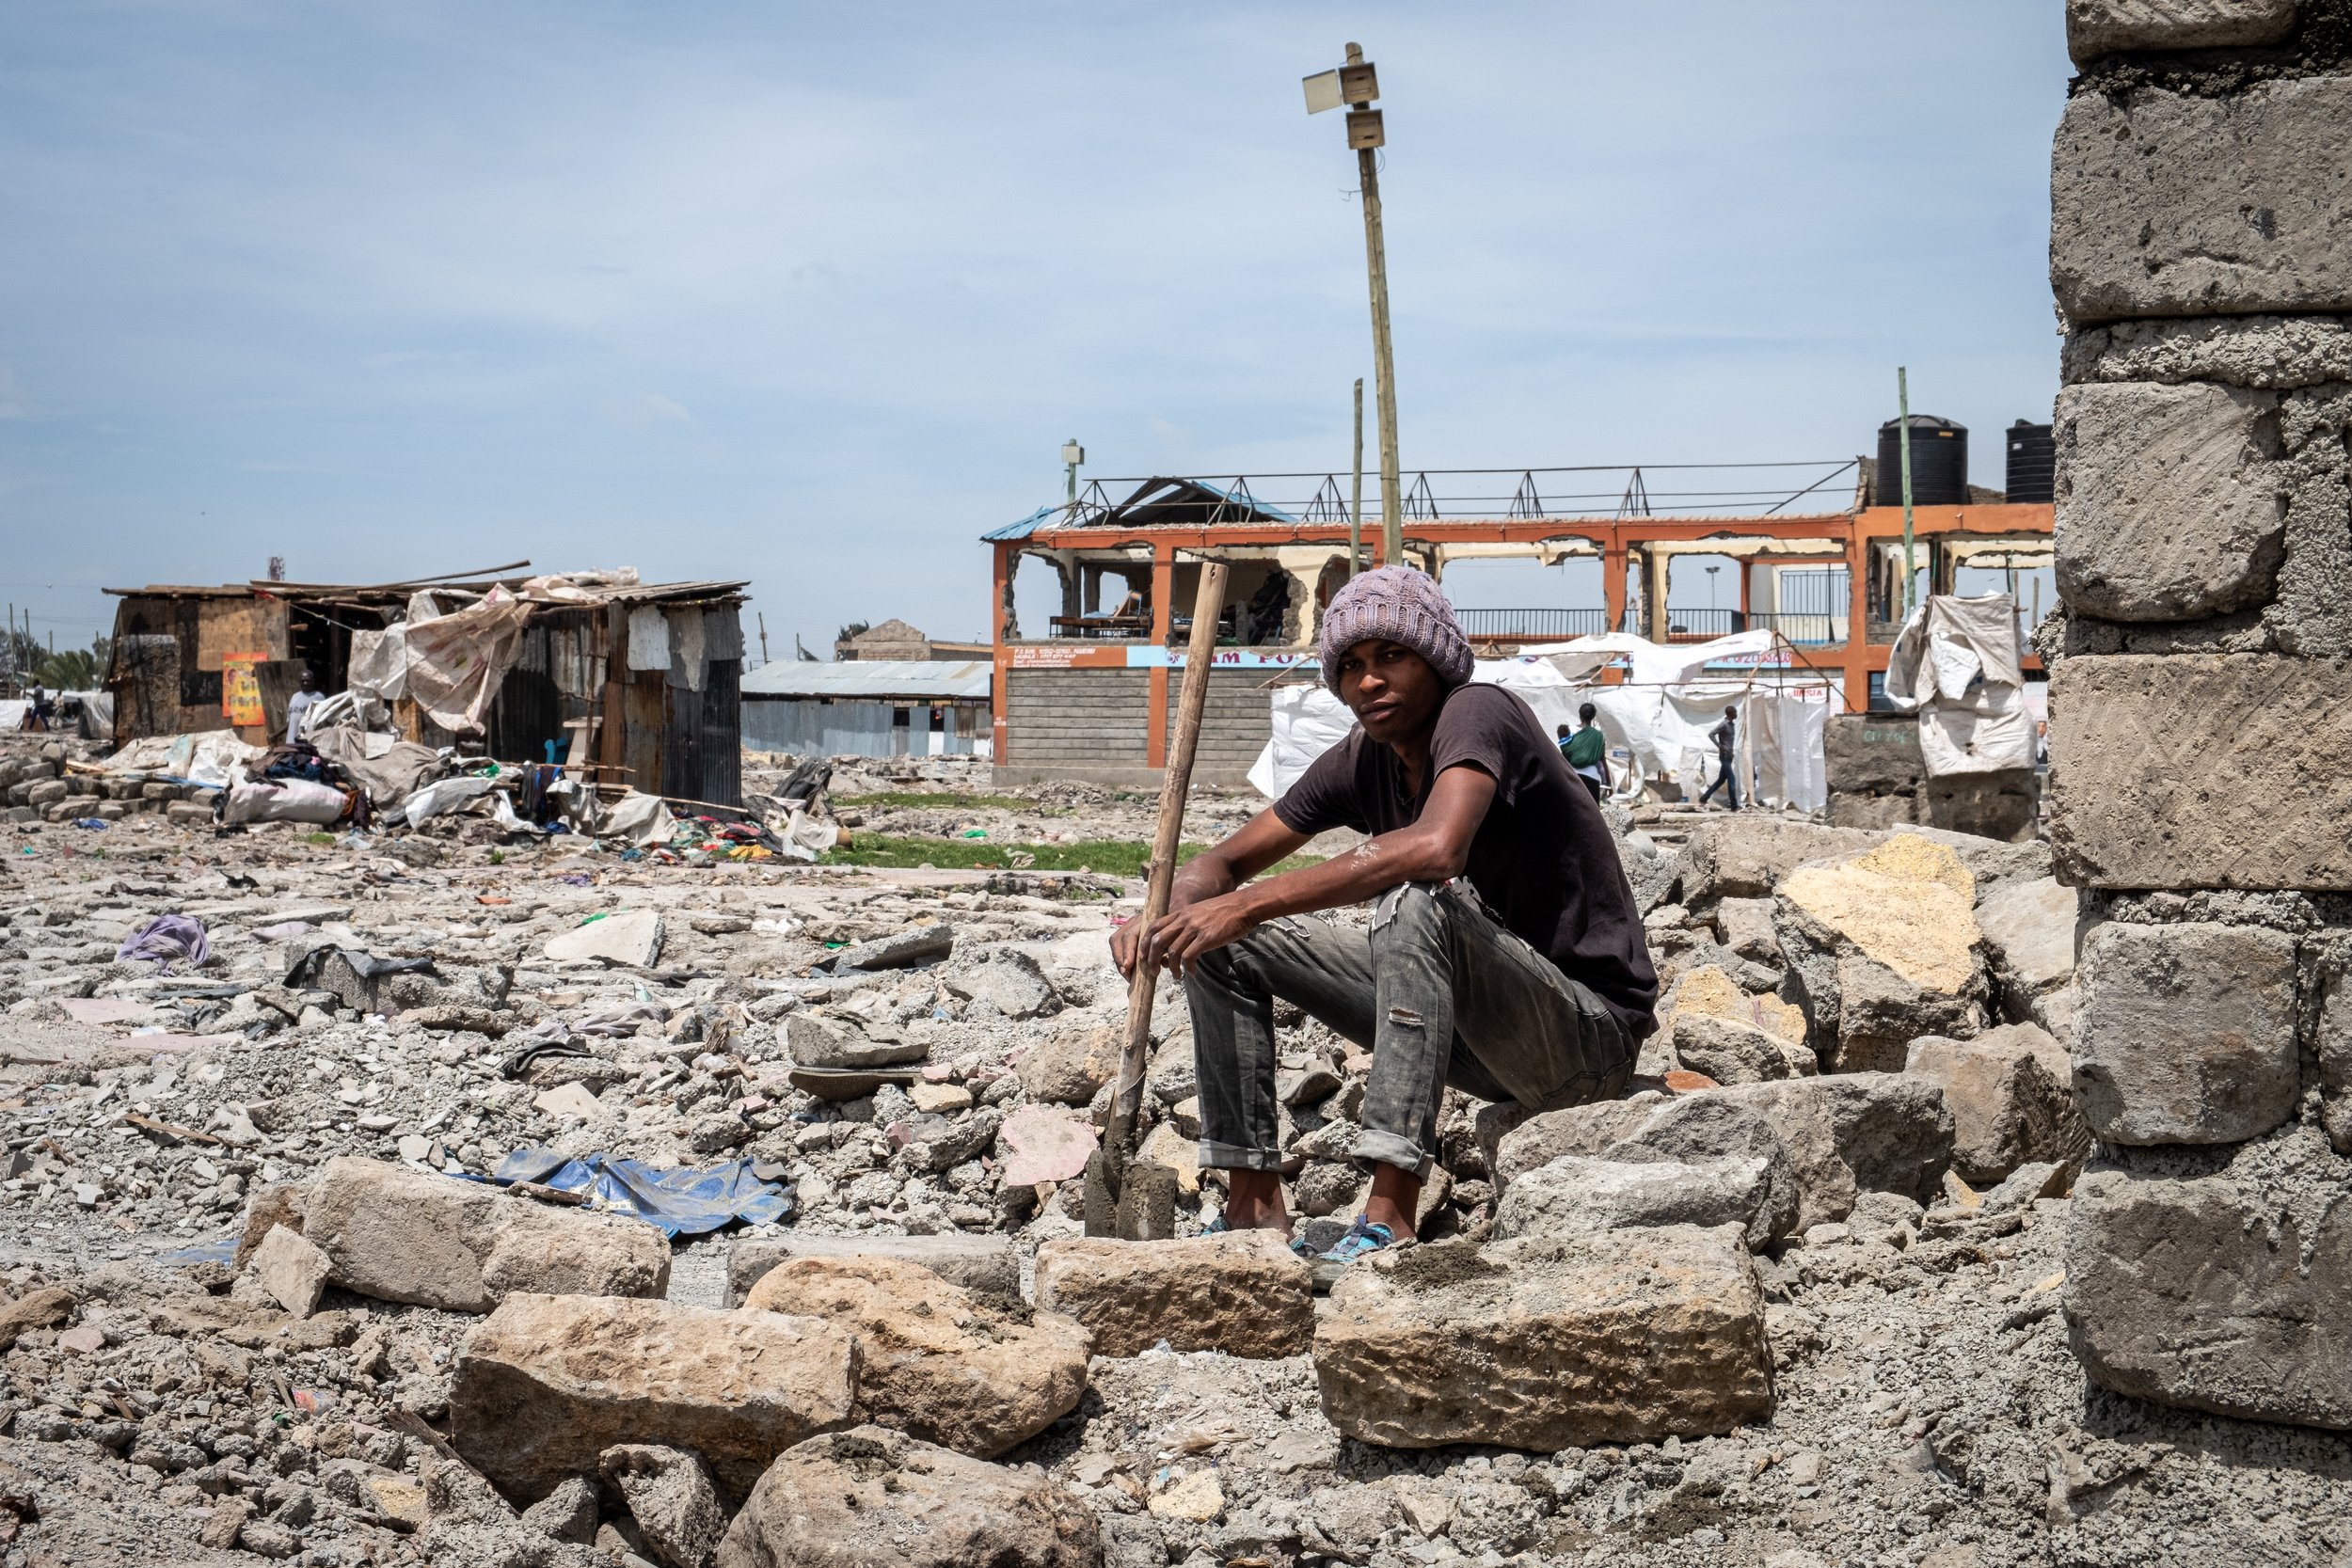 Demolition in Mukuru slums - by Joost Bastmeijer-4903.jpg